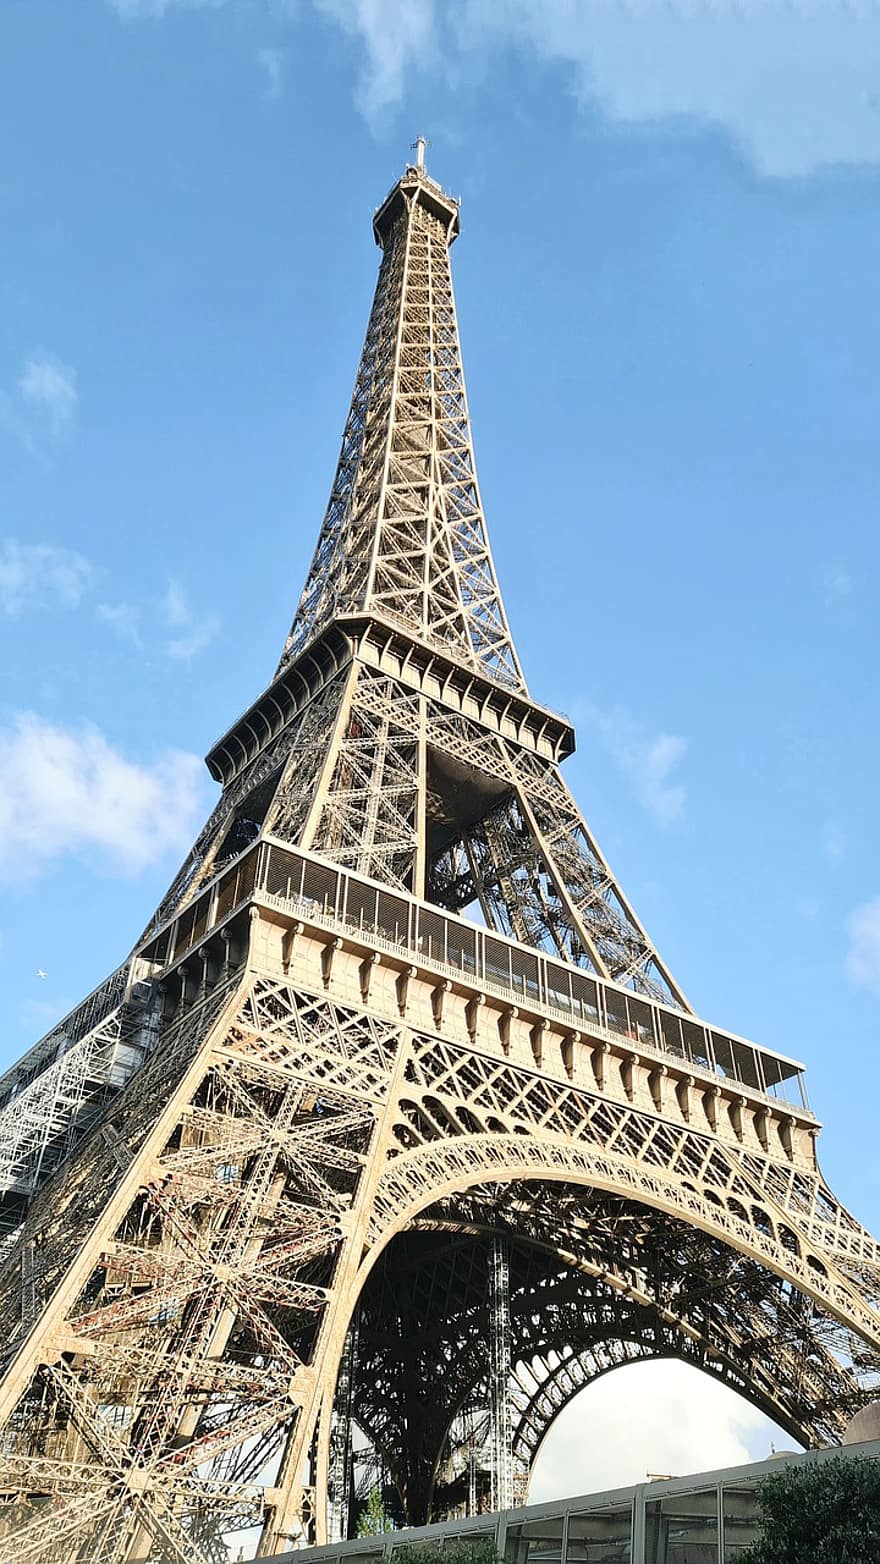 एफिल टॉवर, पर्यटकों के आकर्षण, पेरिस, यात्रा, पर्यटन, फ्रांस, प्रसिद्ध स्थल, आर्किटेक्चर, फ्रांसीसी संस्कृति, नीला, निर्मित संरचना